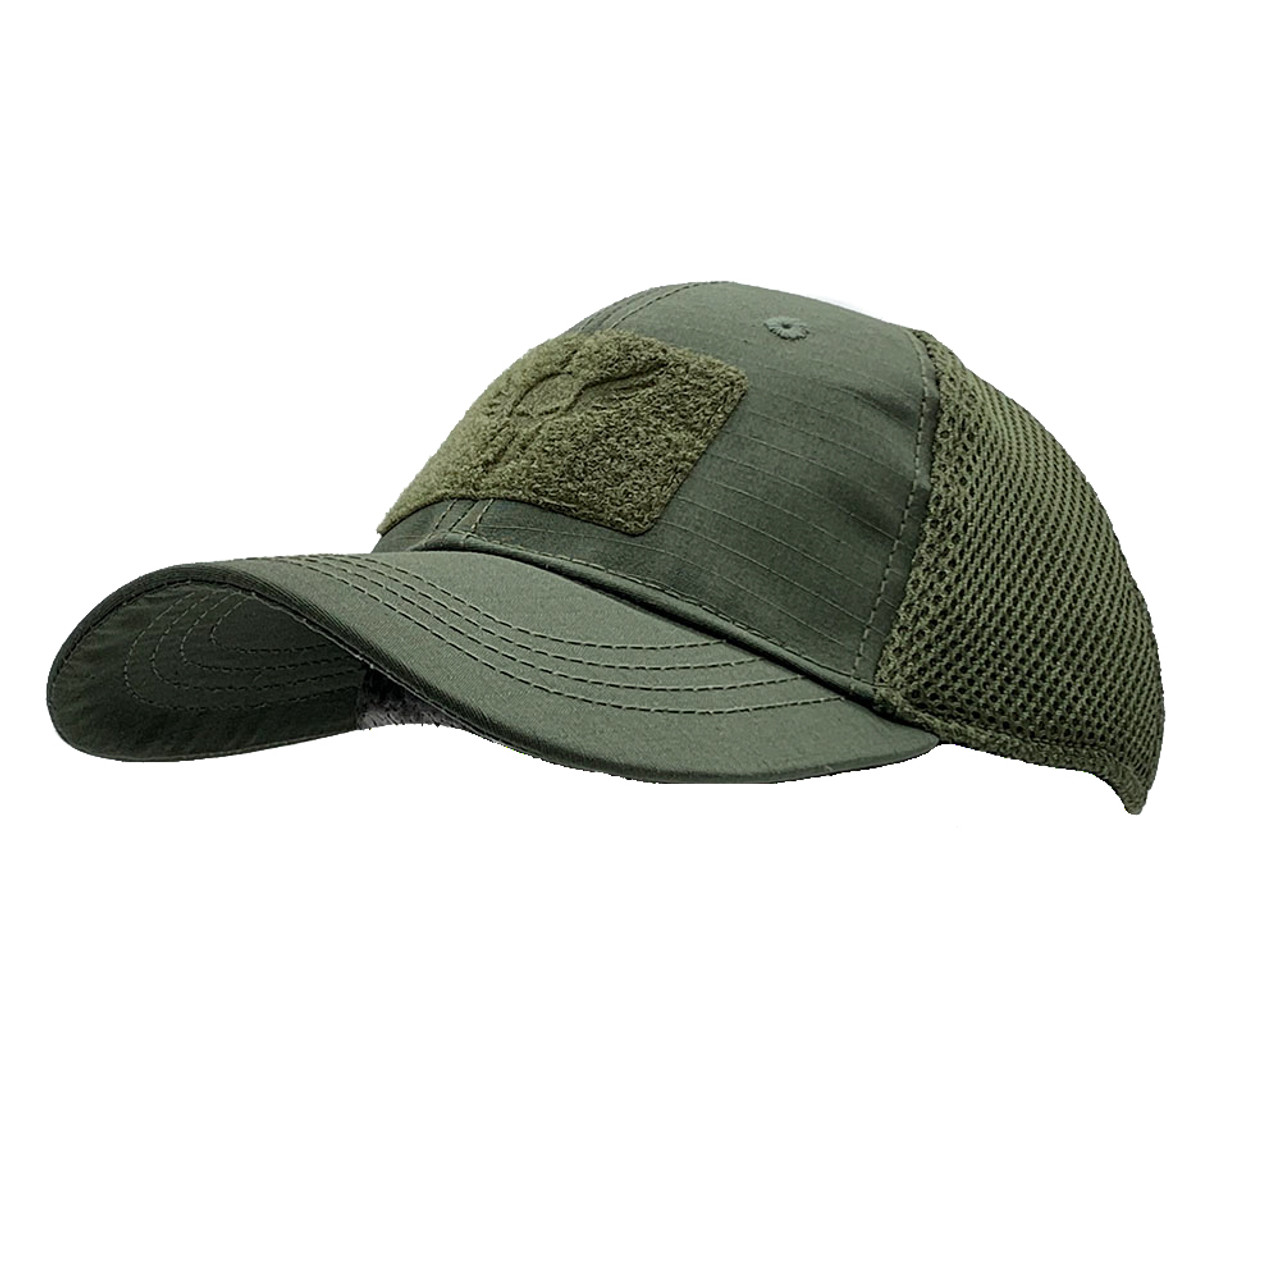 Build A Tactical Cap - Choose Hat & 2 Patches, Multicam Mesh